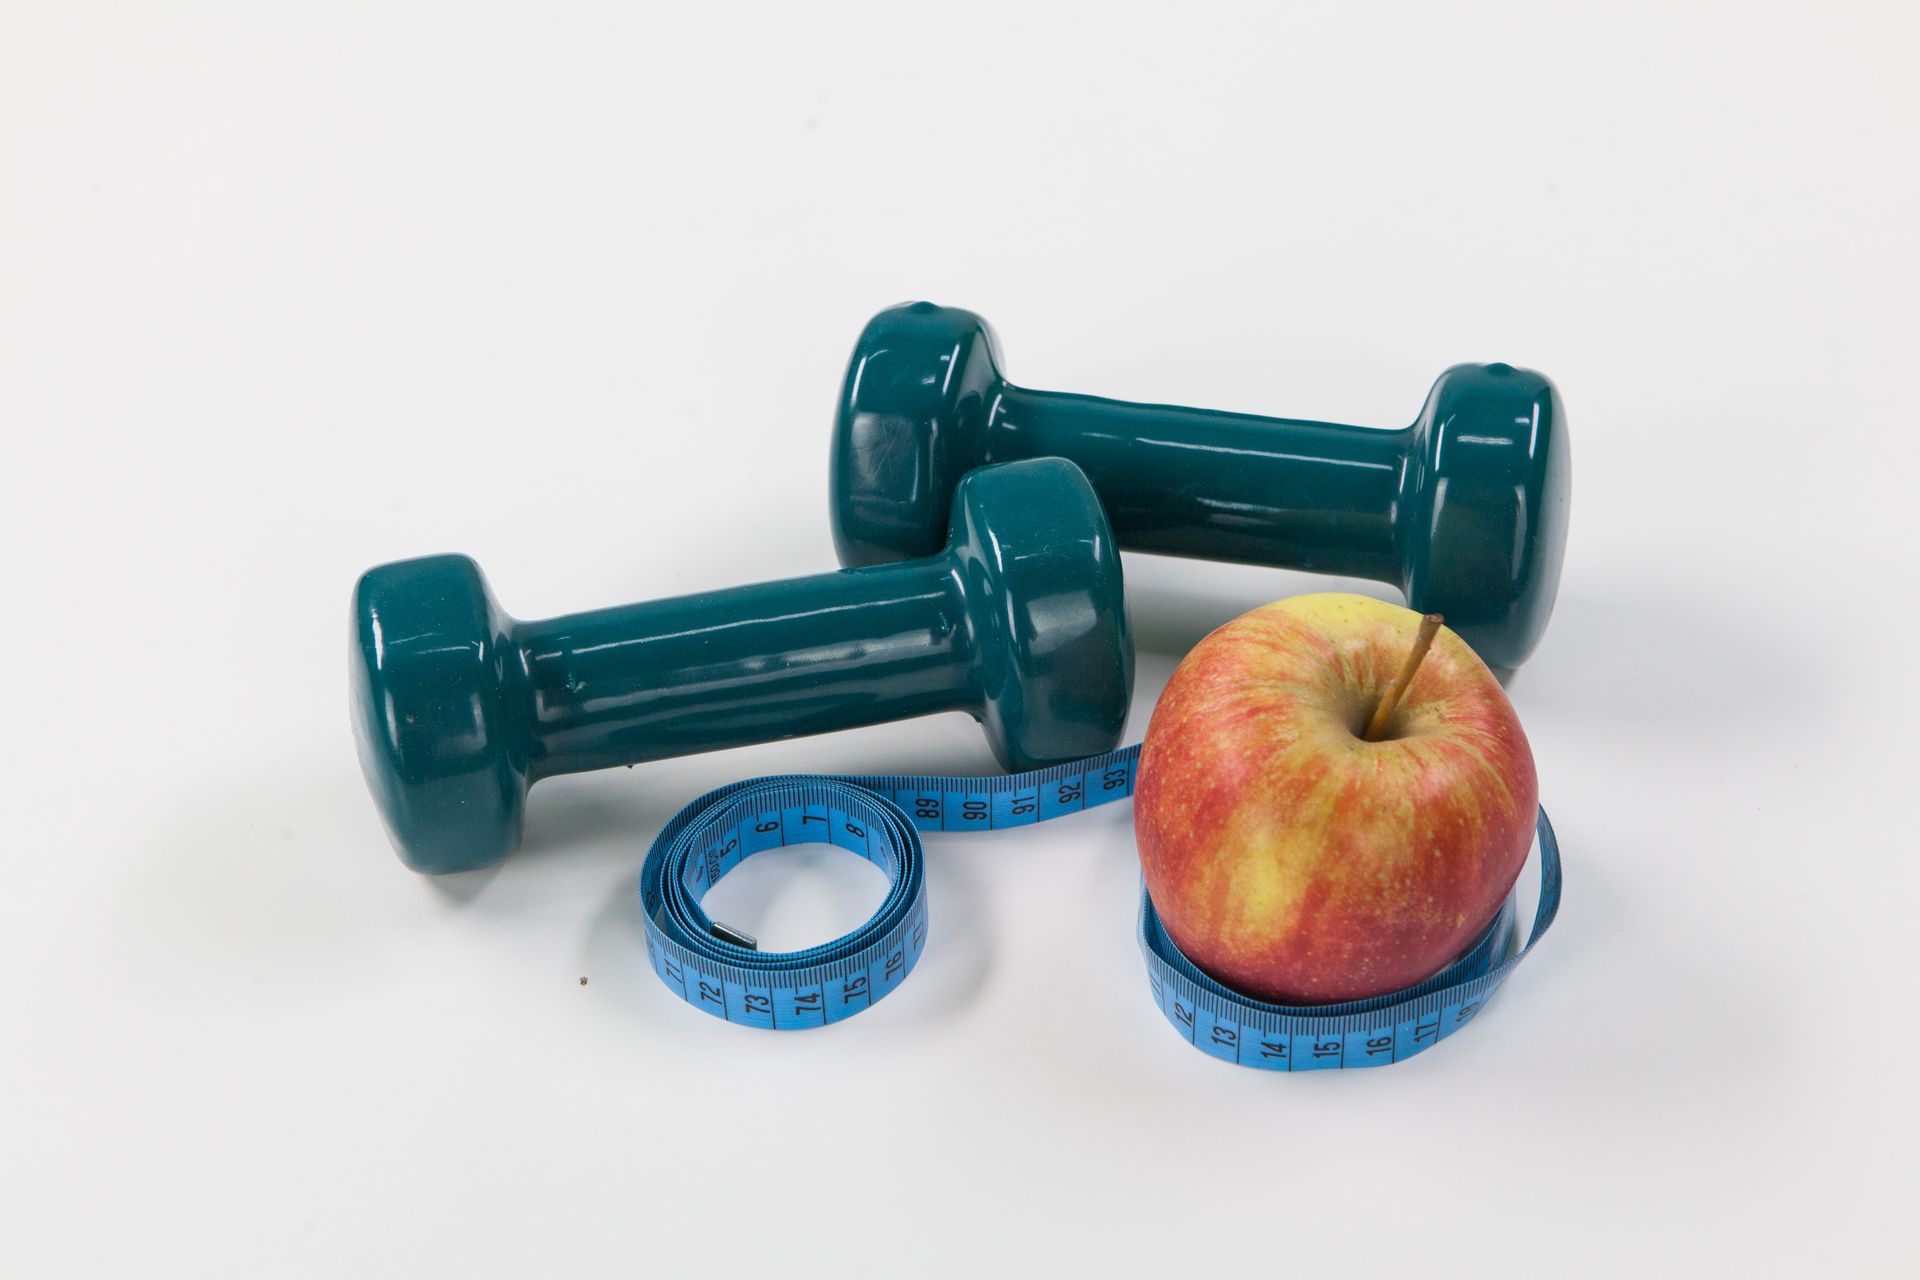 Fotografia przedstawia dwa niebieskie ciężarki do ćwiczeń, błękitny centymetr krawiecki i czerwono – żółte jabłko z ogonkiem. Należy zinterpretować tę ilustrację.